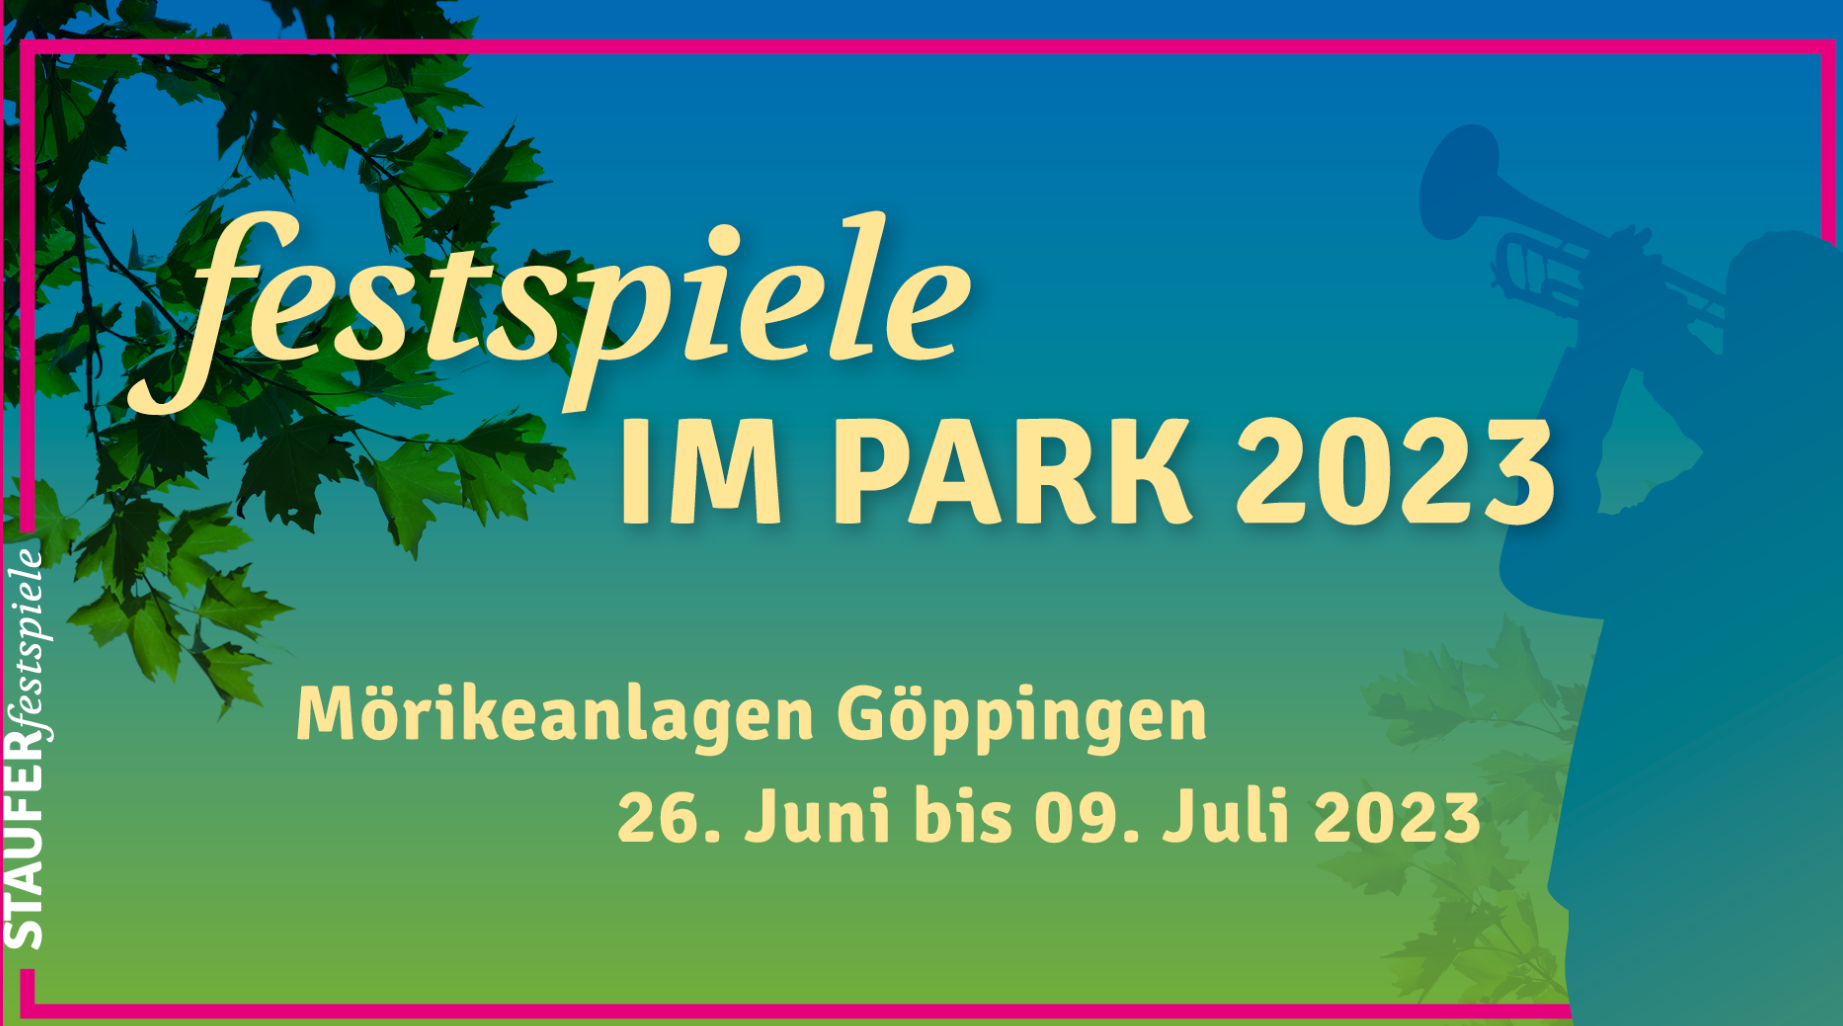 Festspiele im Park 2023